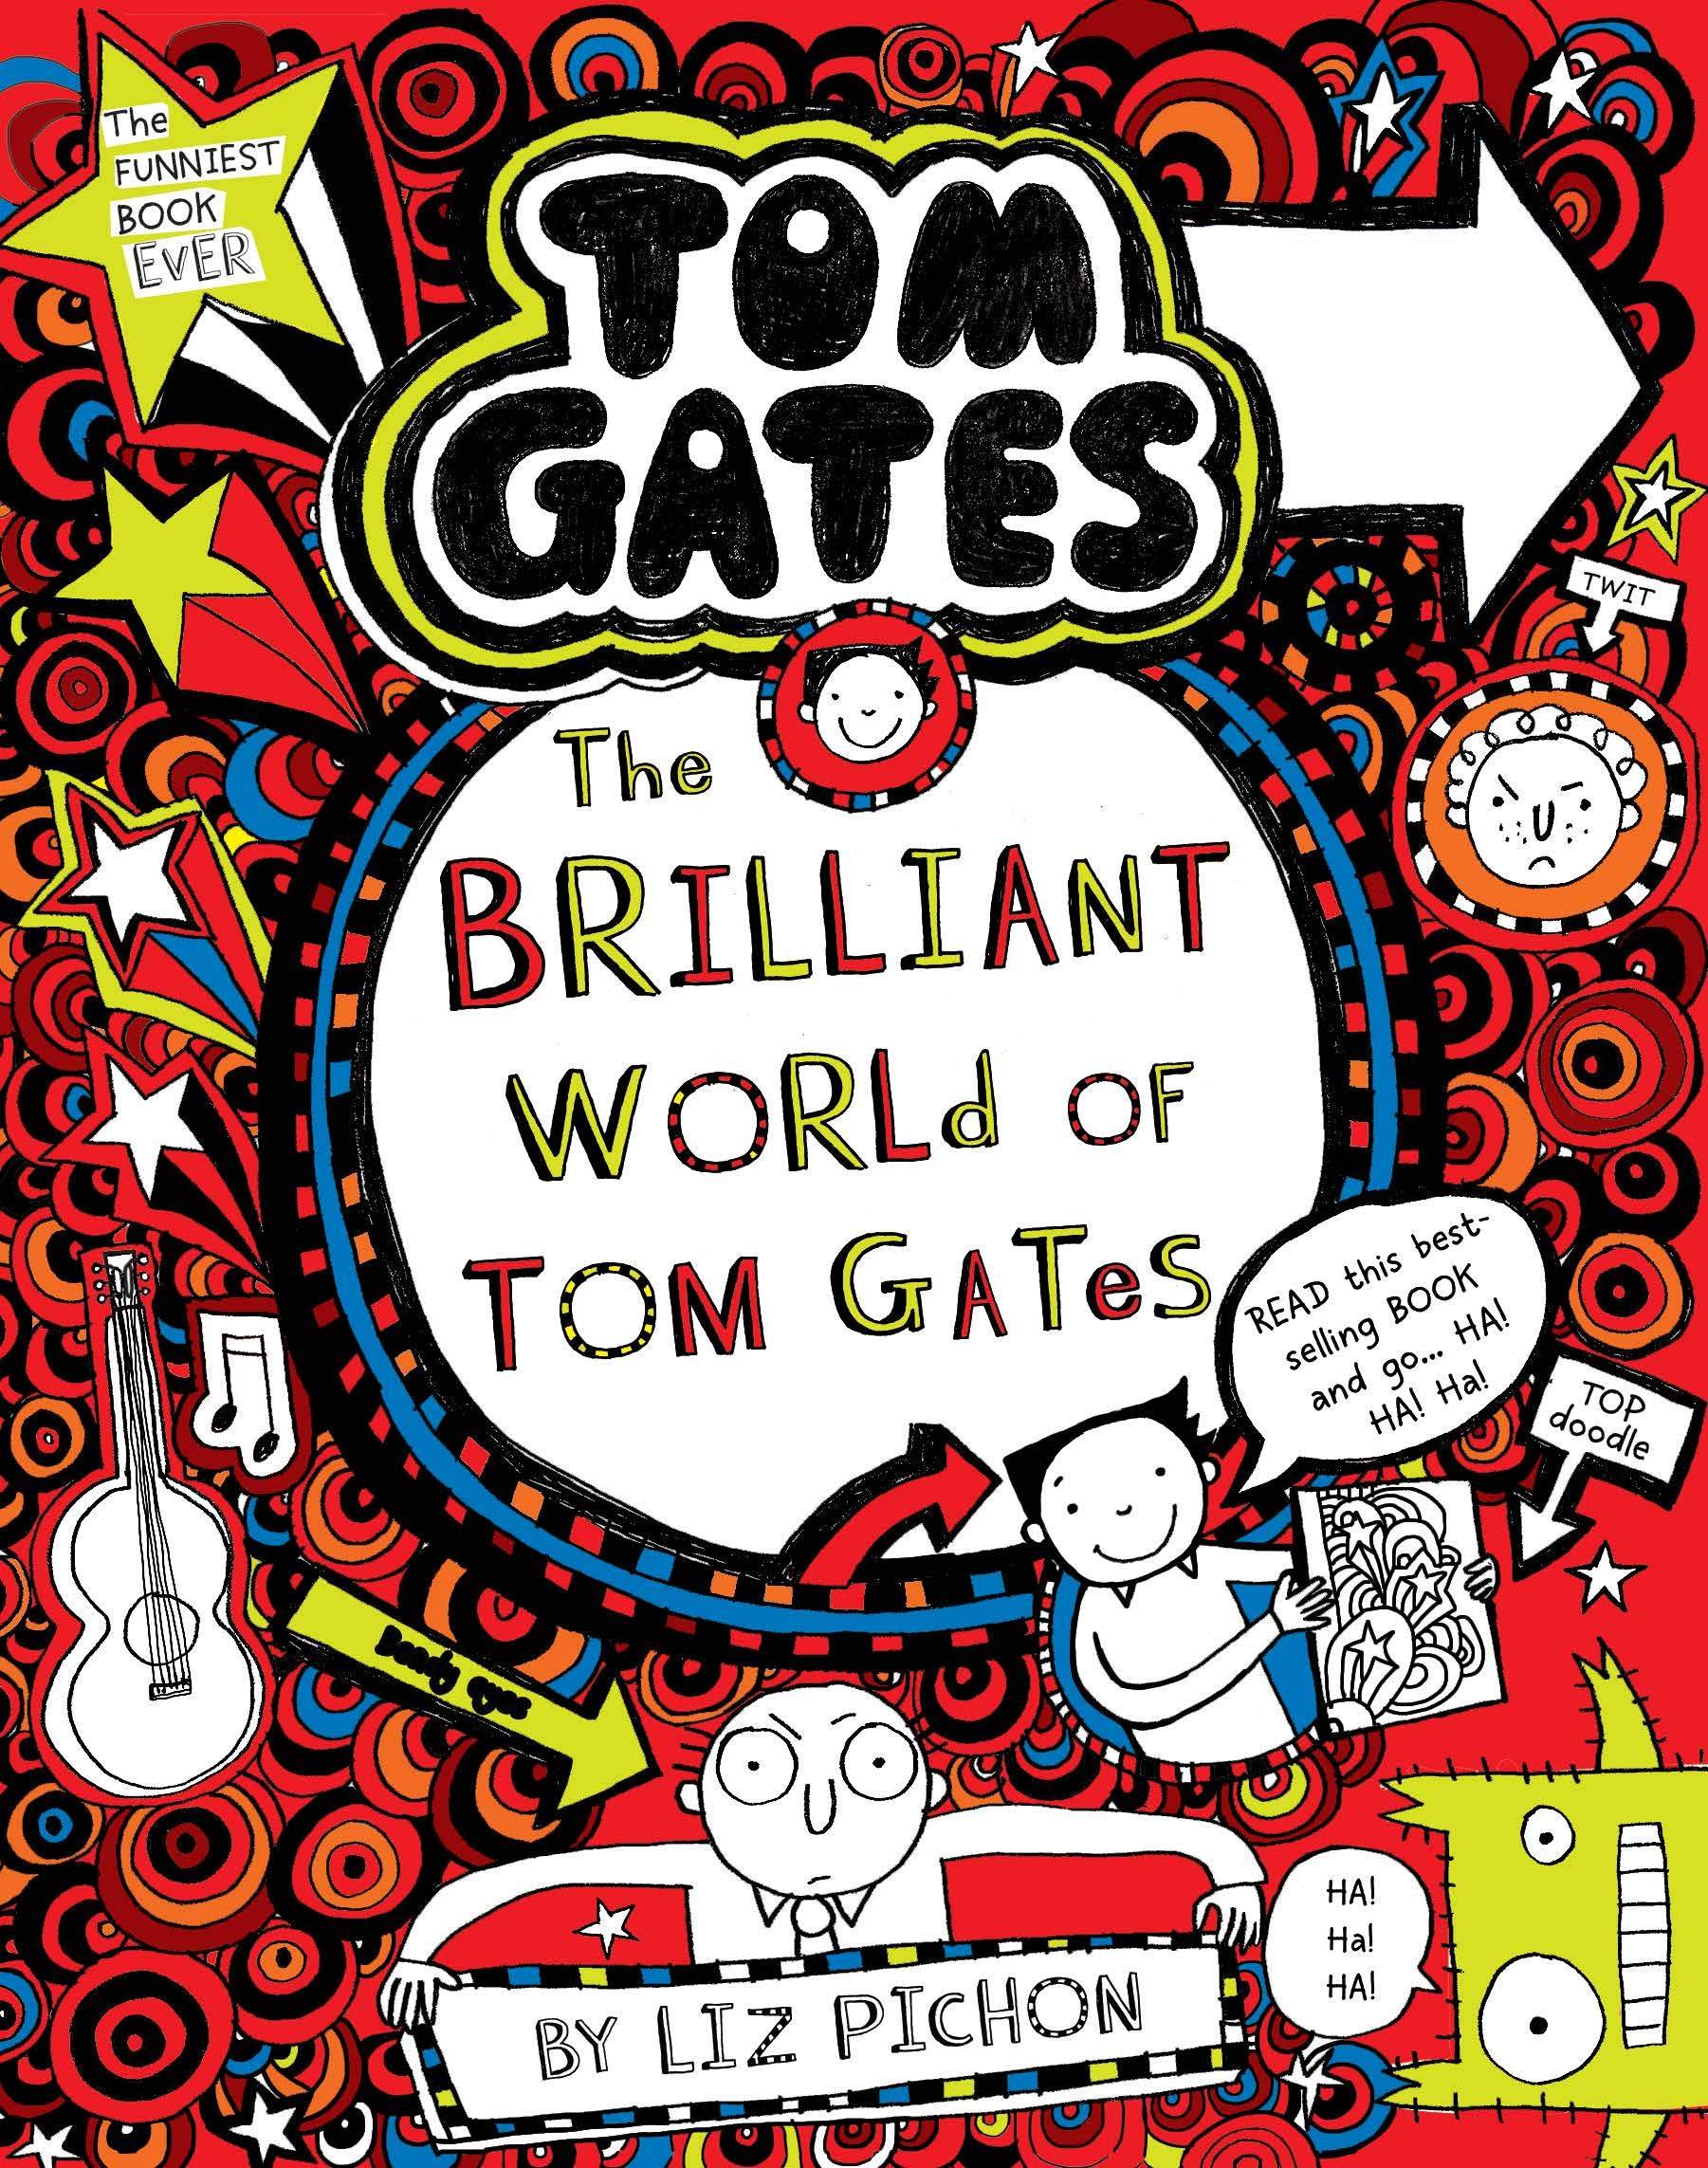 IMG : Tom Gates- The Brilliant world of Tom gates